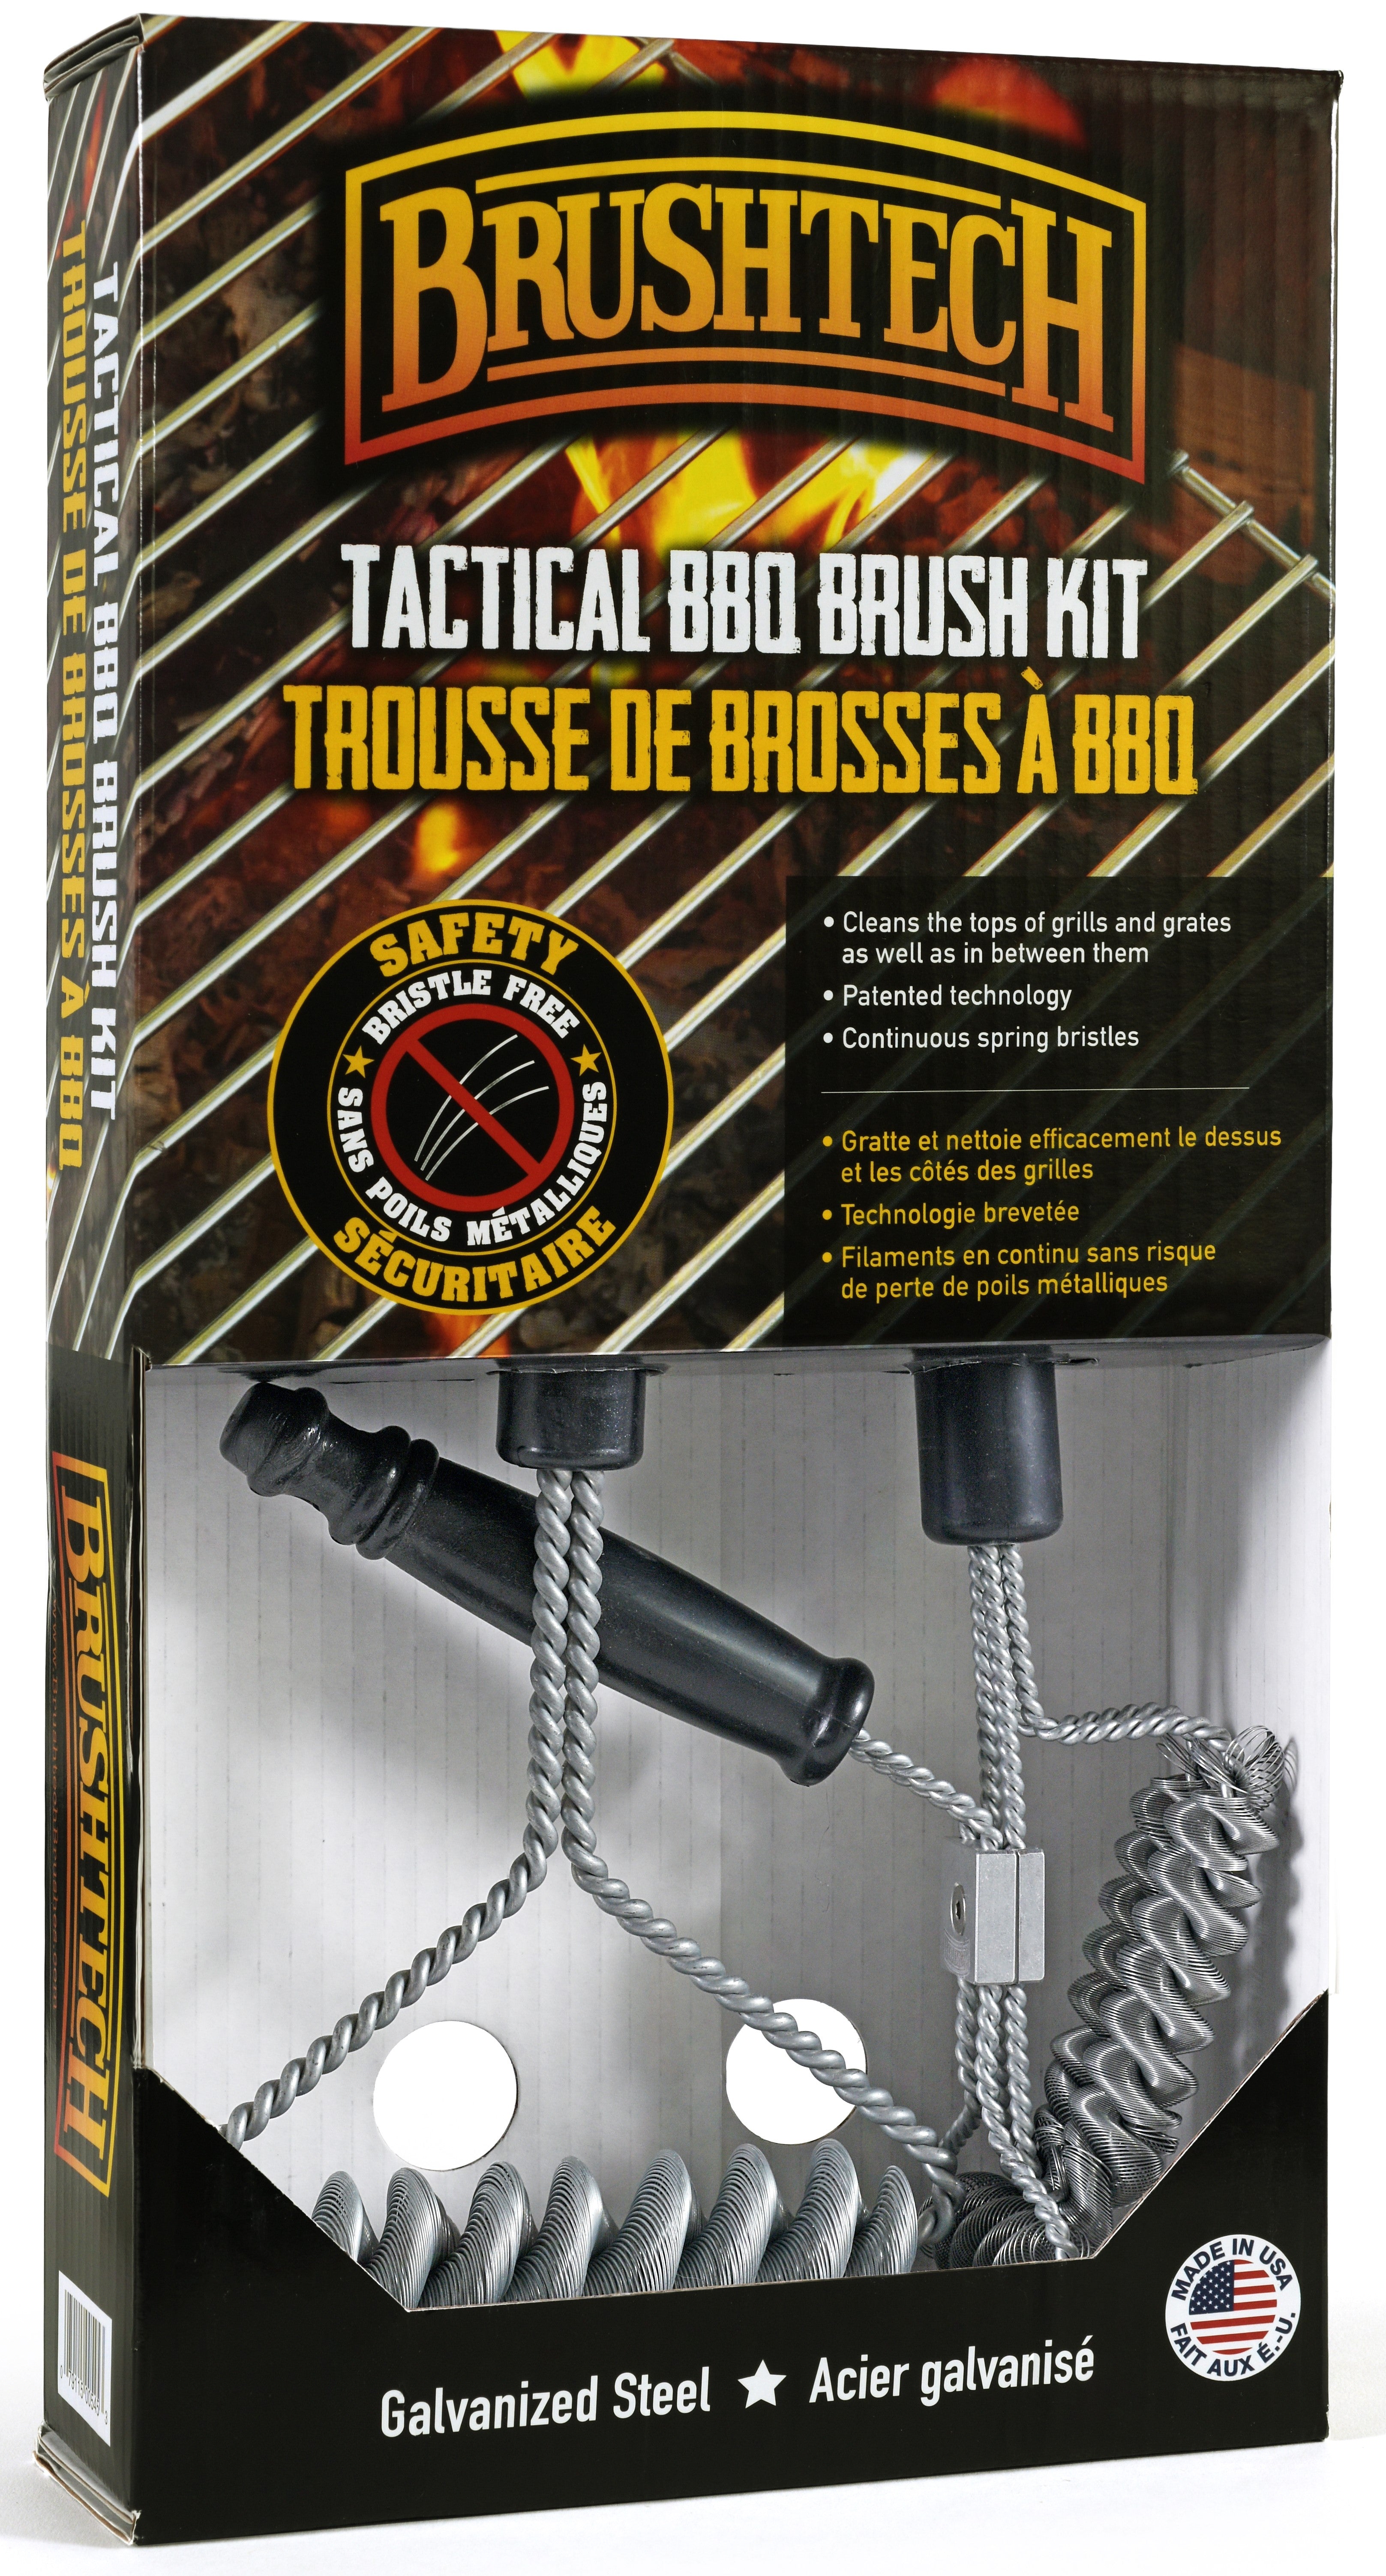 BrushTech Toughest Little Safety Double-Helix Bristle Free BBQ